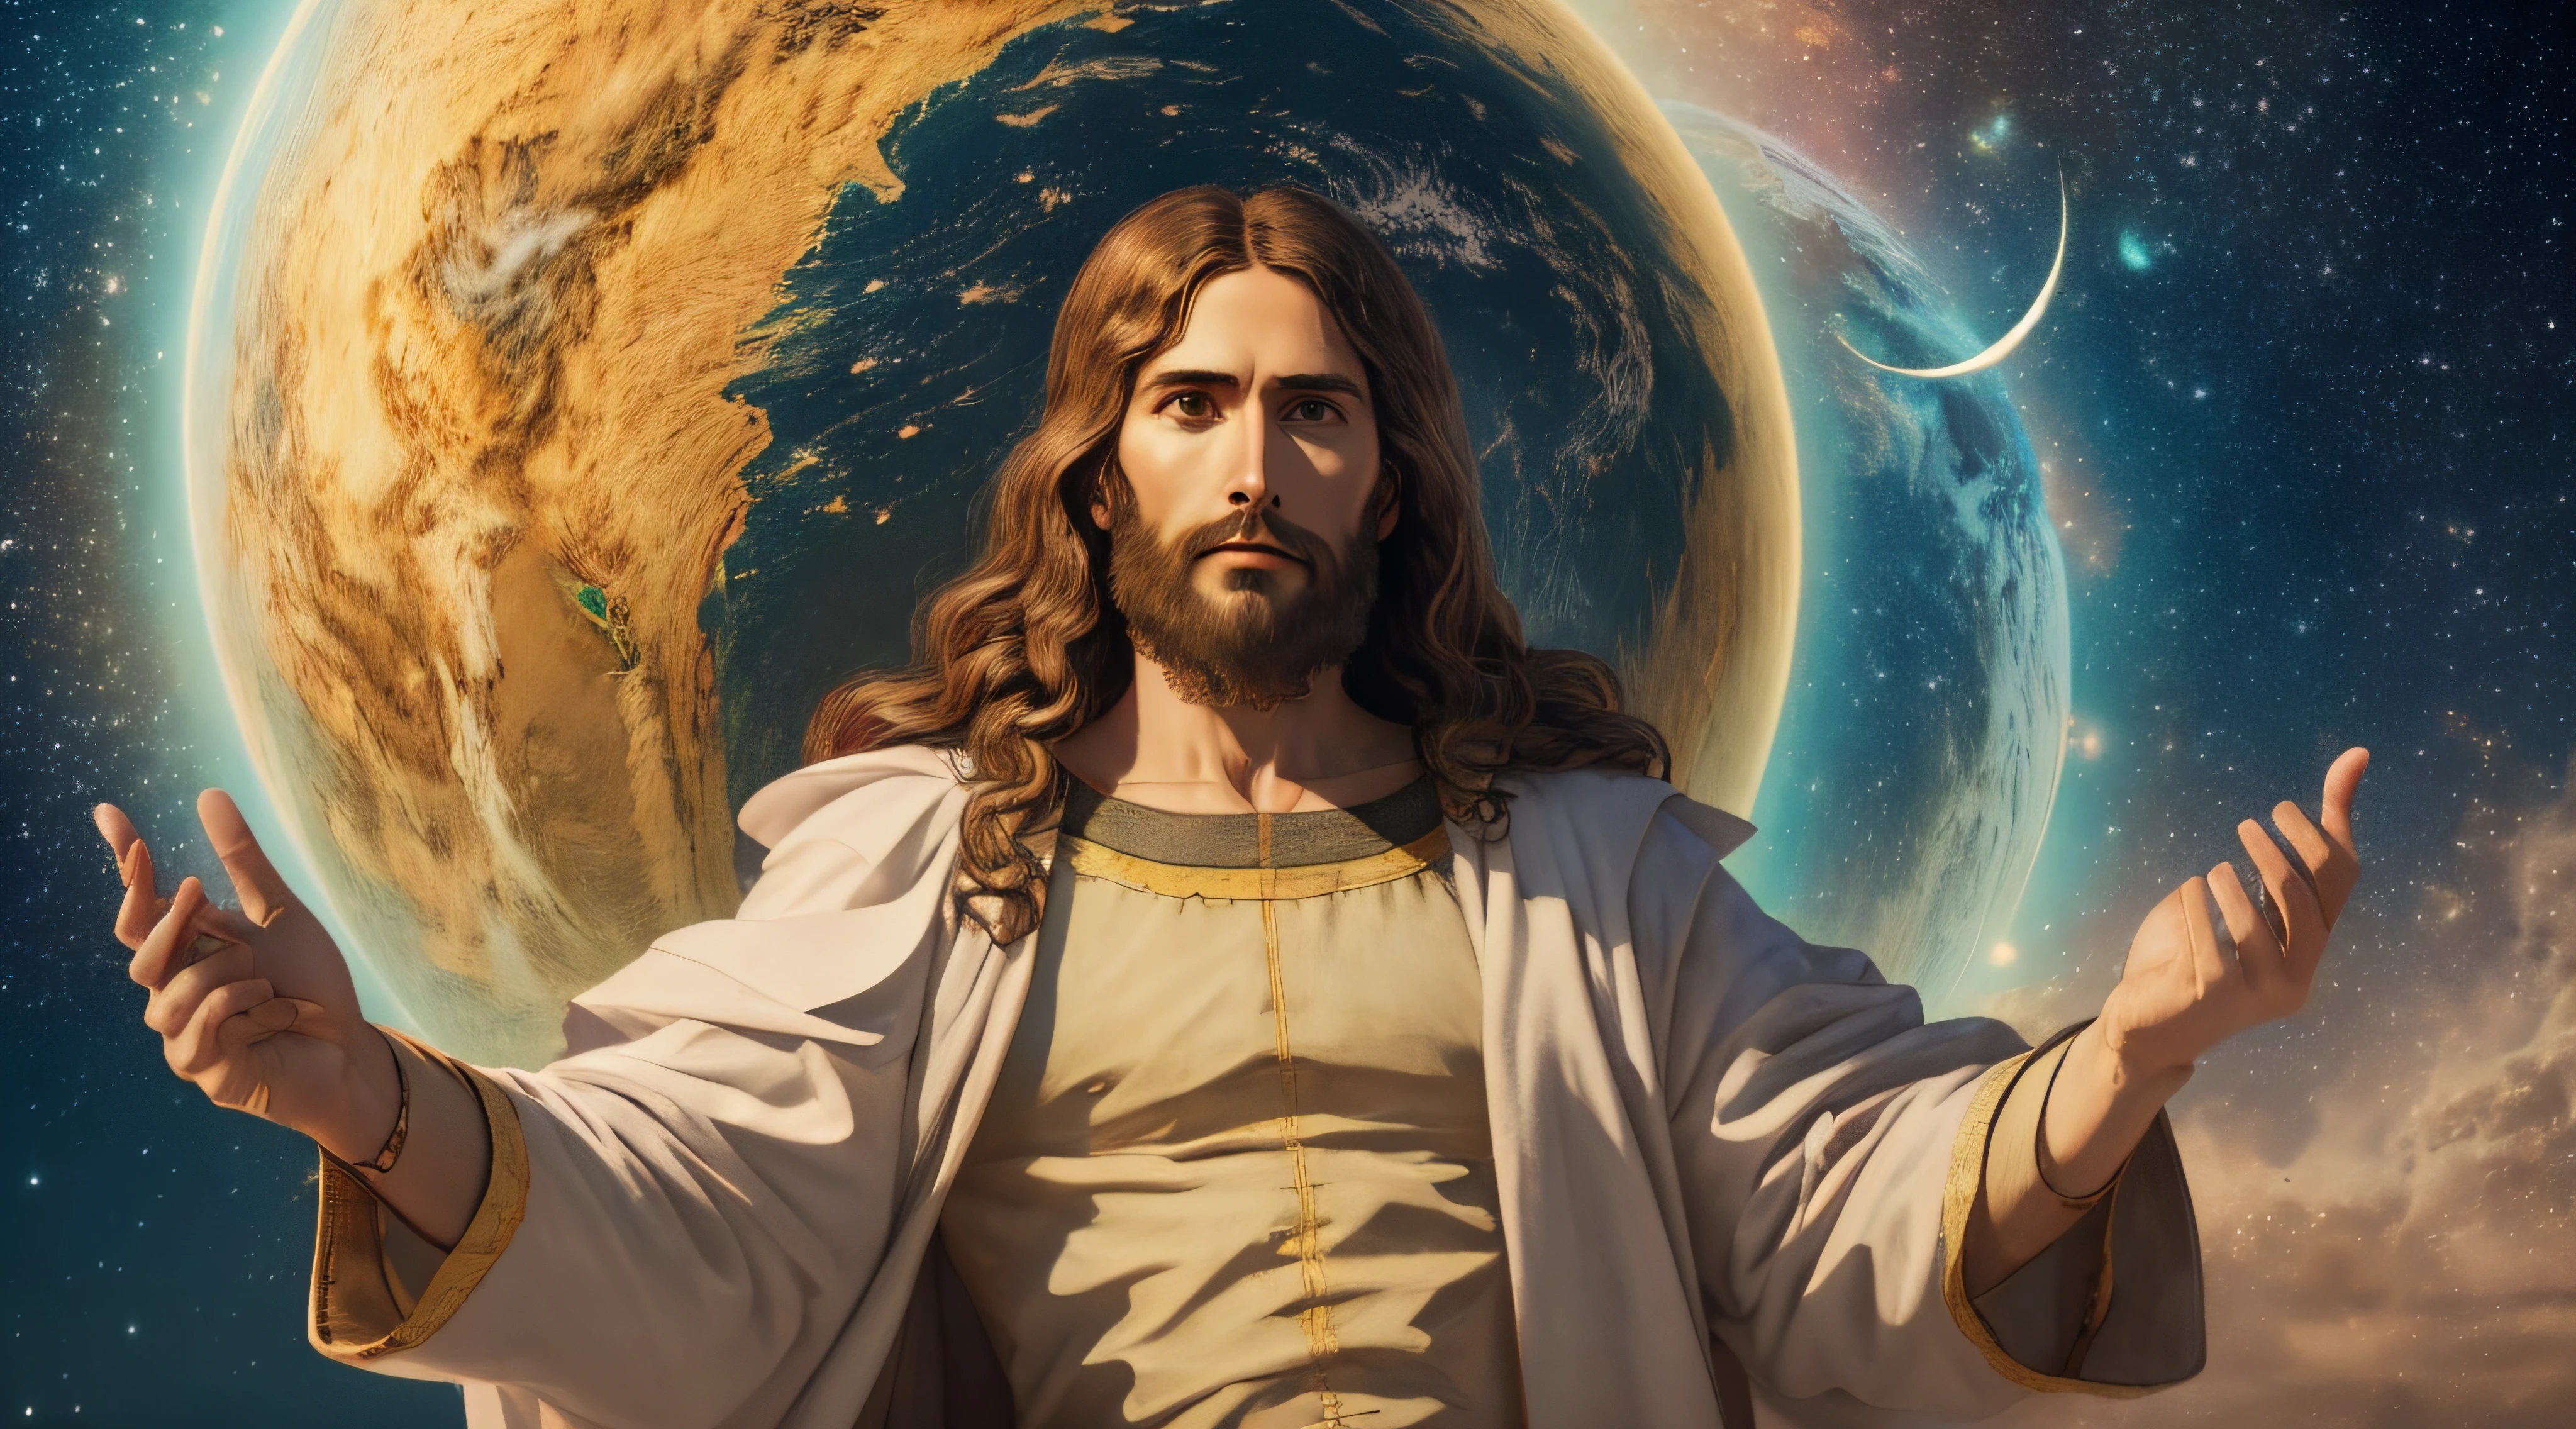 "Реалистичный шедевр 8k с идеальной анатомией: Иисус Христос держит планету Земля в одной руке, с недеформированным лицом."